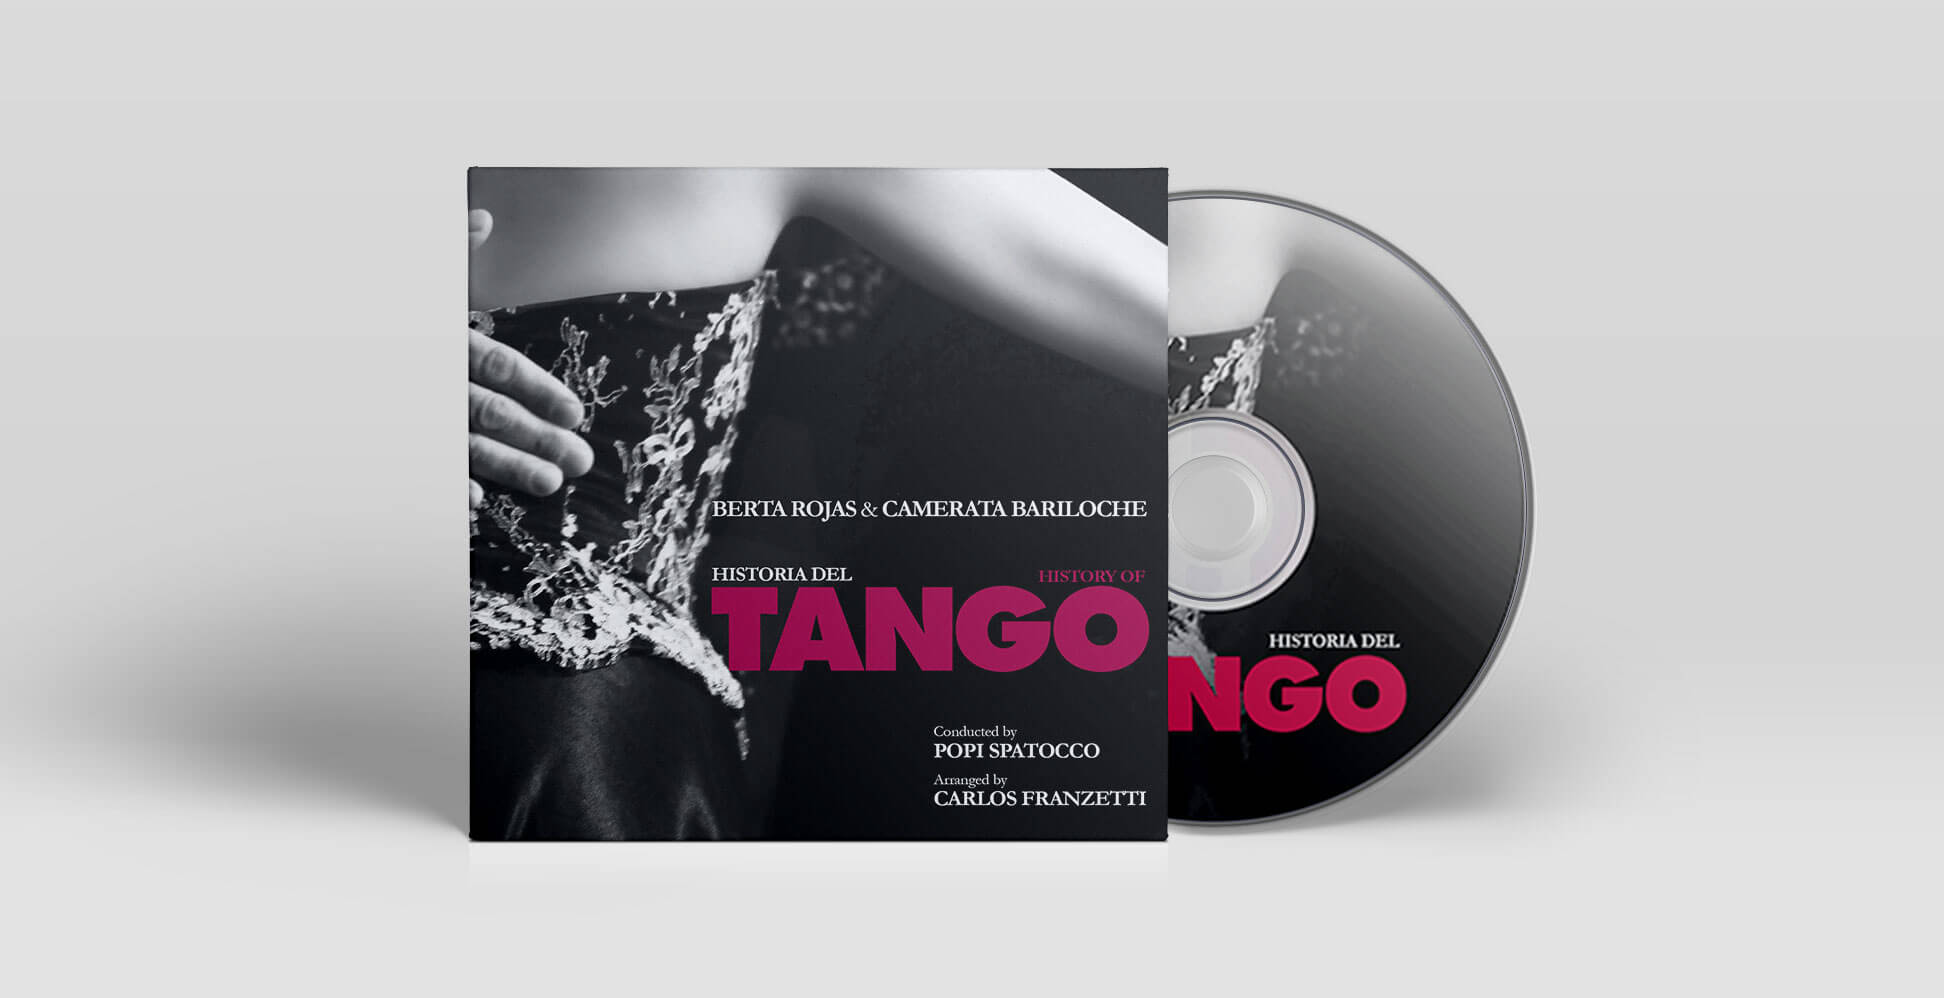 Berta Rojas - Historia del Tango